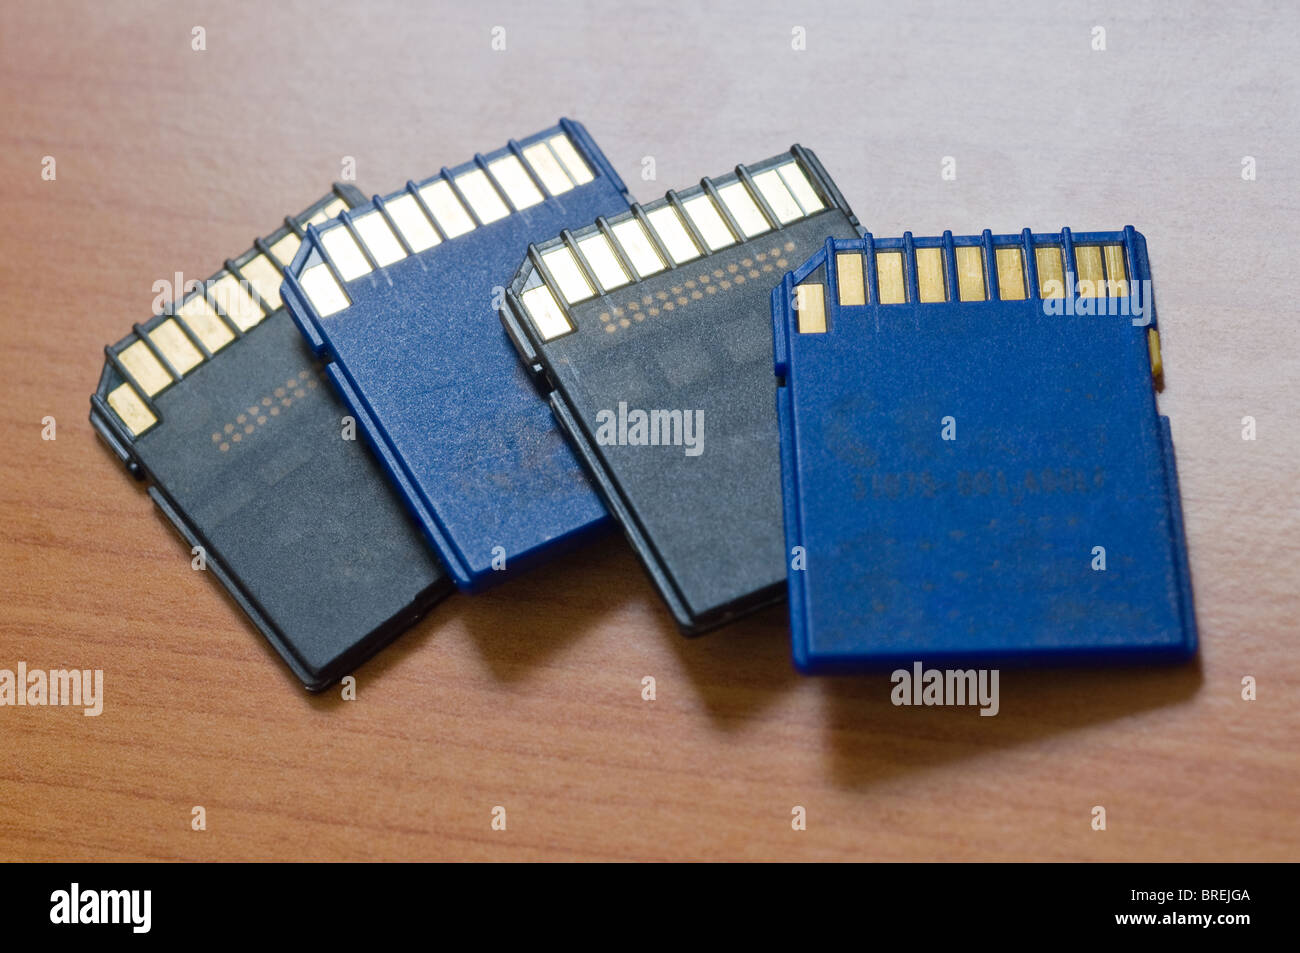 SD-Karten mit Flash-Speicher für Kameras und elektronische Geräte Stockfoto